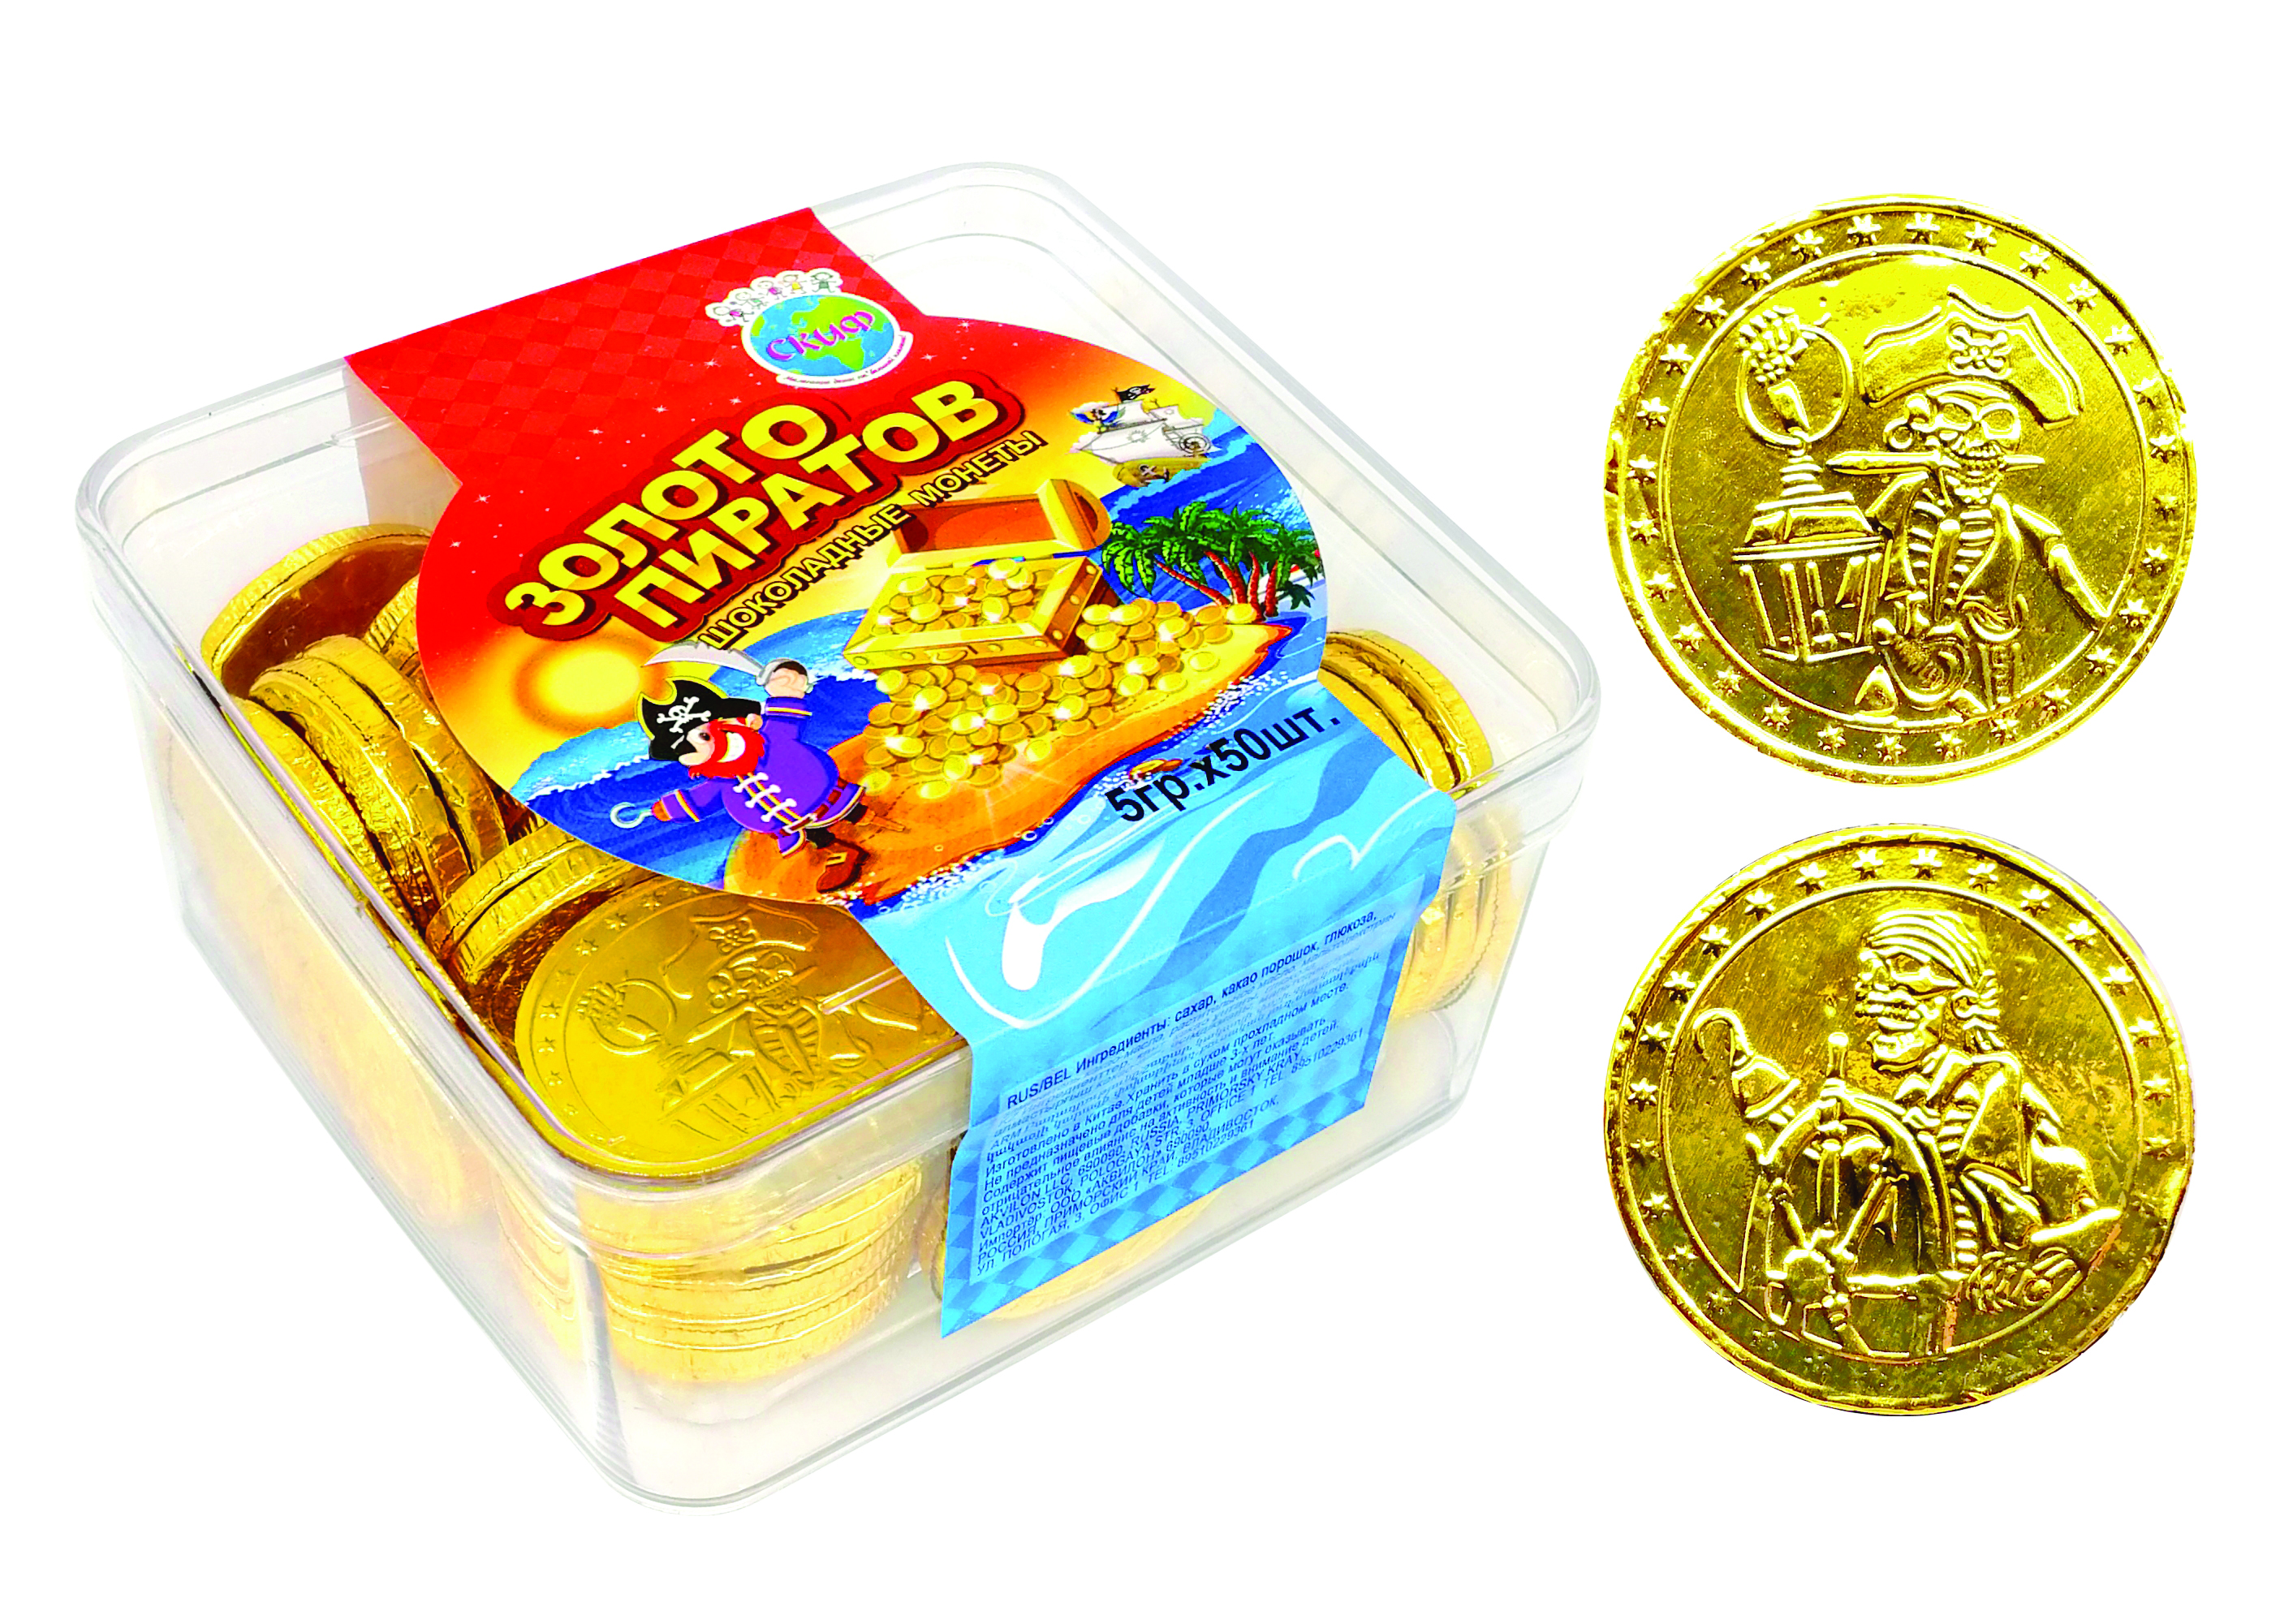 Шоколадка монета. Шоколадные монеты золото пиратов Скиф. Шоколадные монеты золото пиратов 5 гр. Монетный двор шоколад золото пиратов 150гр. Конфеты золотые монеты.